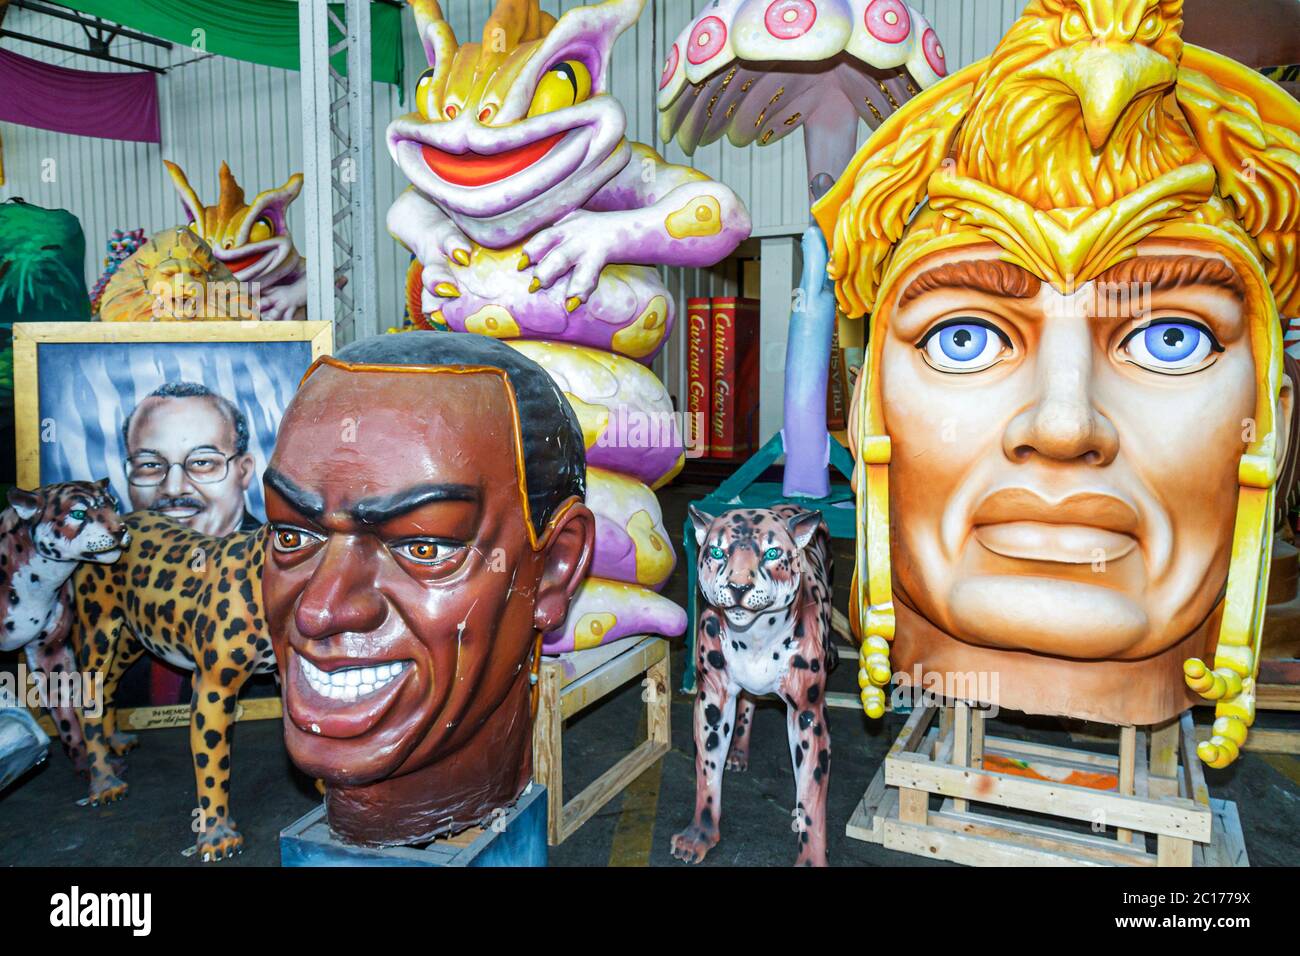 New Orleans Louisiana, Hafen von New Orleans, Blaine Kern's Mardi Gras World, Attraktion, Karnevalsausstellung, Designstudio, Requisiten, Statue, Parade Floa Stockfoto